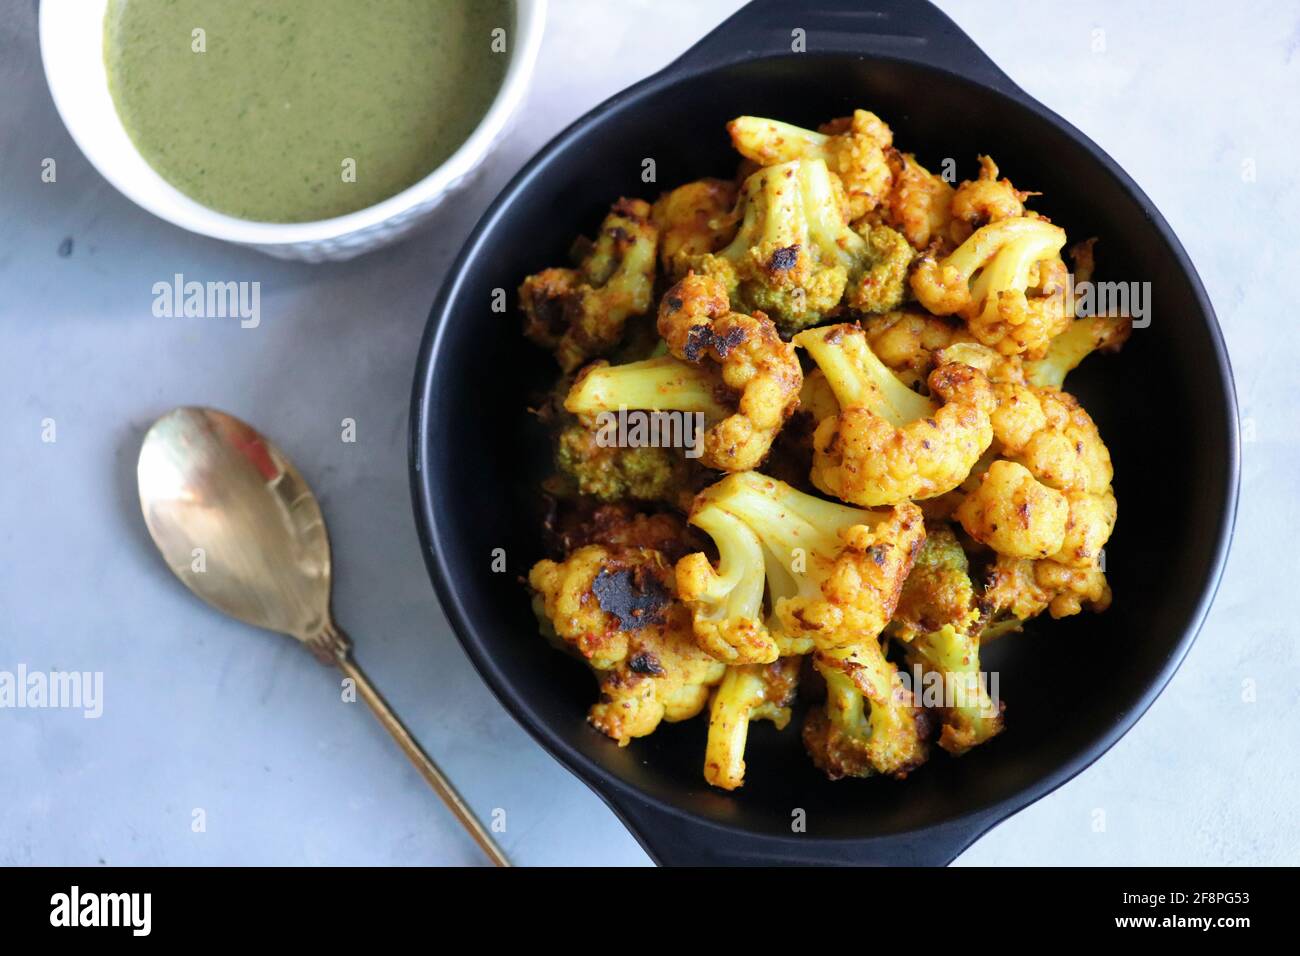 Gobi oder Gobhi Tandoori. Masala gerösteter Blumenkohl ist ein beliebtes indisches vegetarisches Vorspeise Gericht serviert mit Minze und Koriander Chutney. Stockfoto